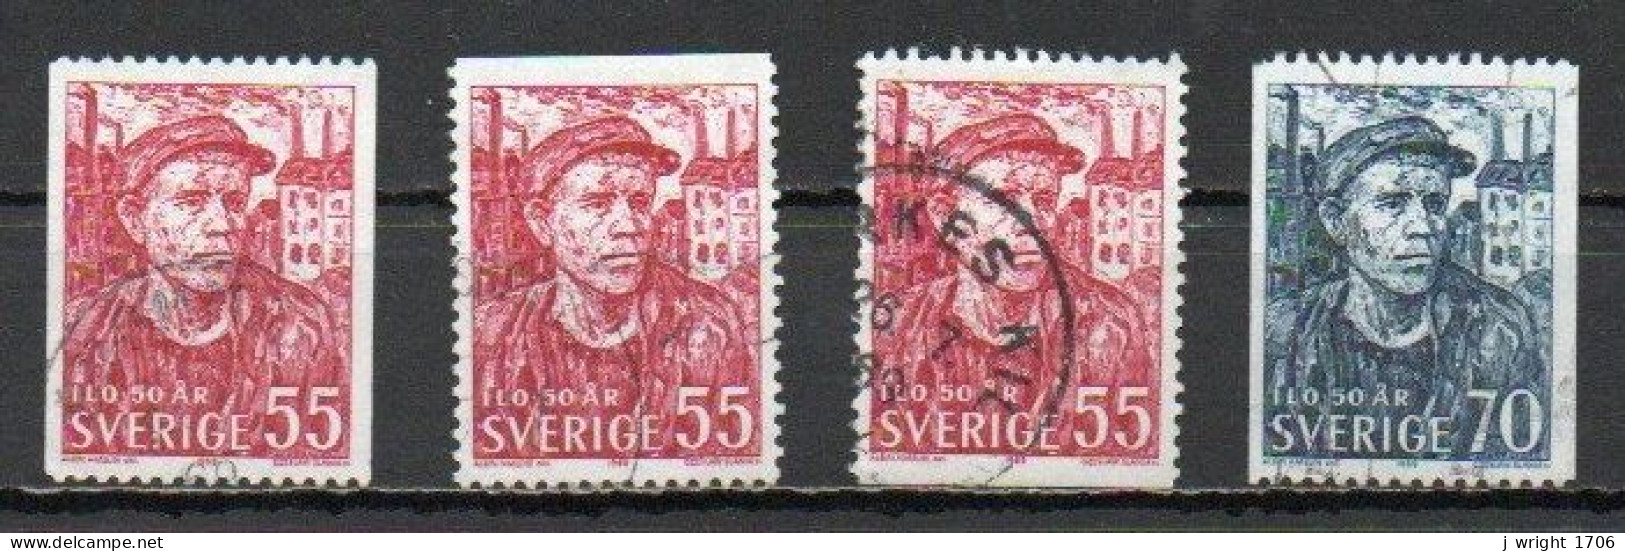 Sweden, 1969, ILO 50th Anniv, Set, USED - Gebraucht